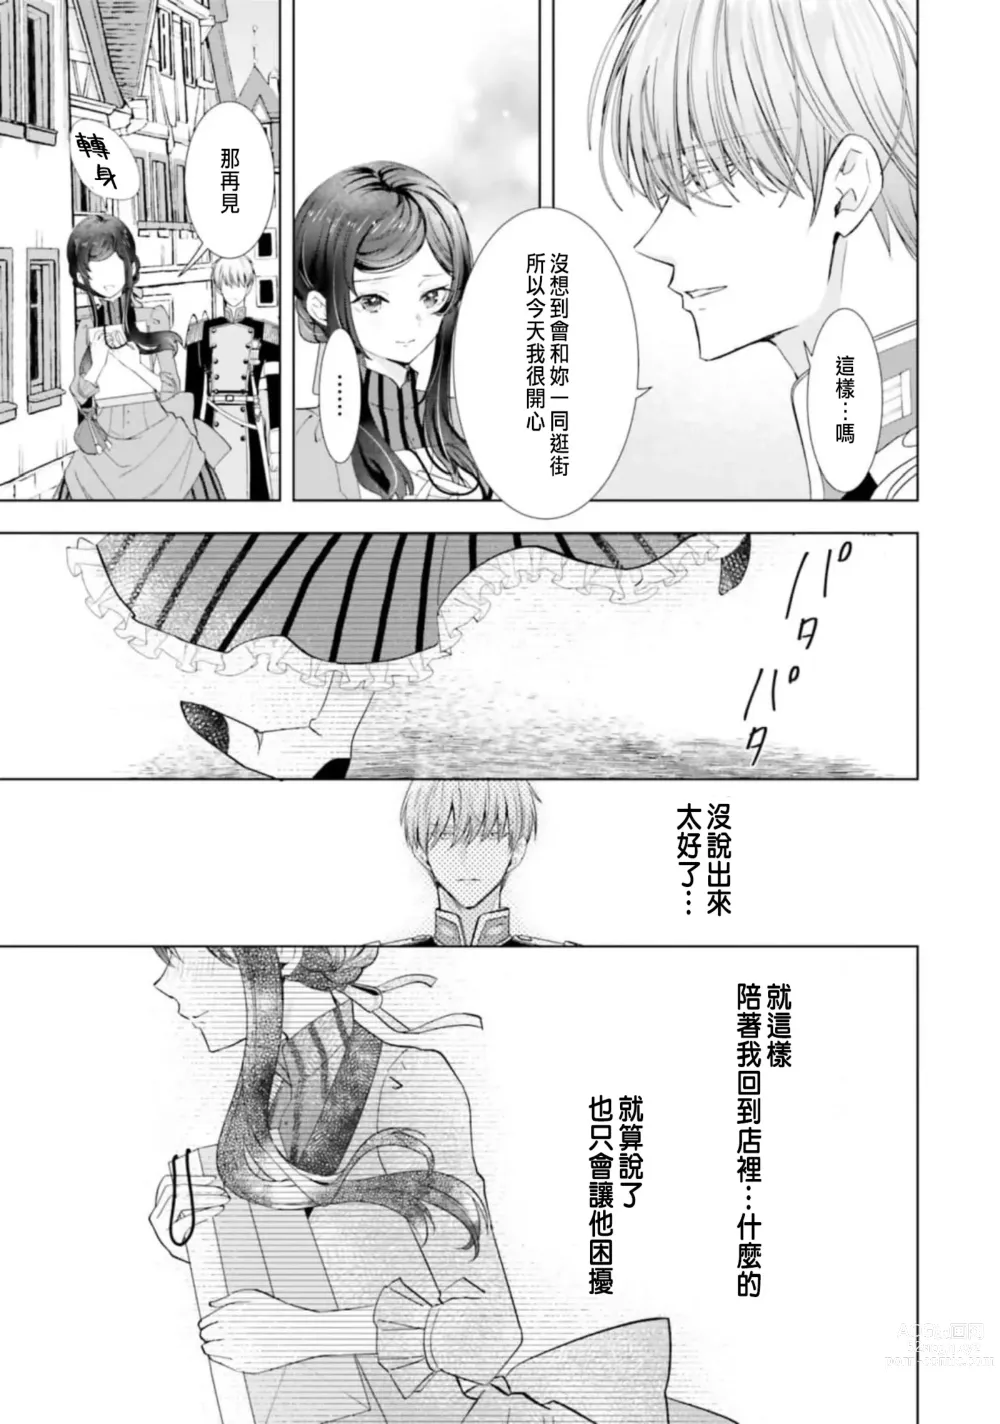 Page 157 of manga 總之先來做吧 1